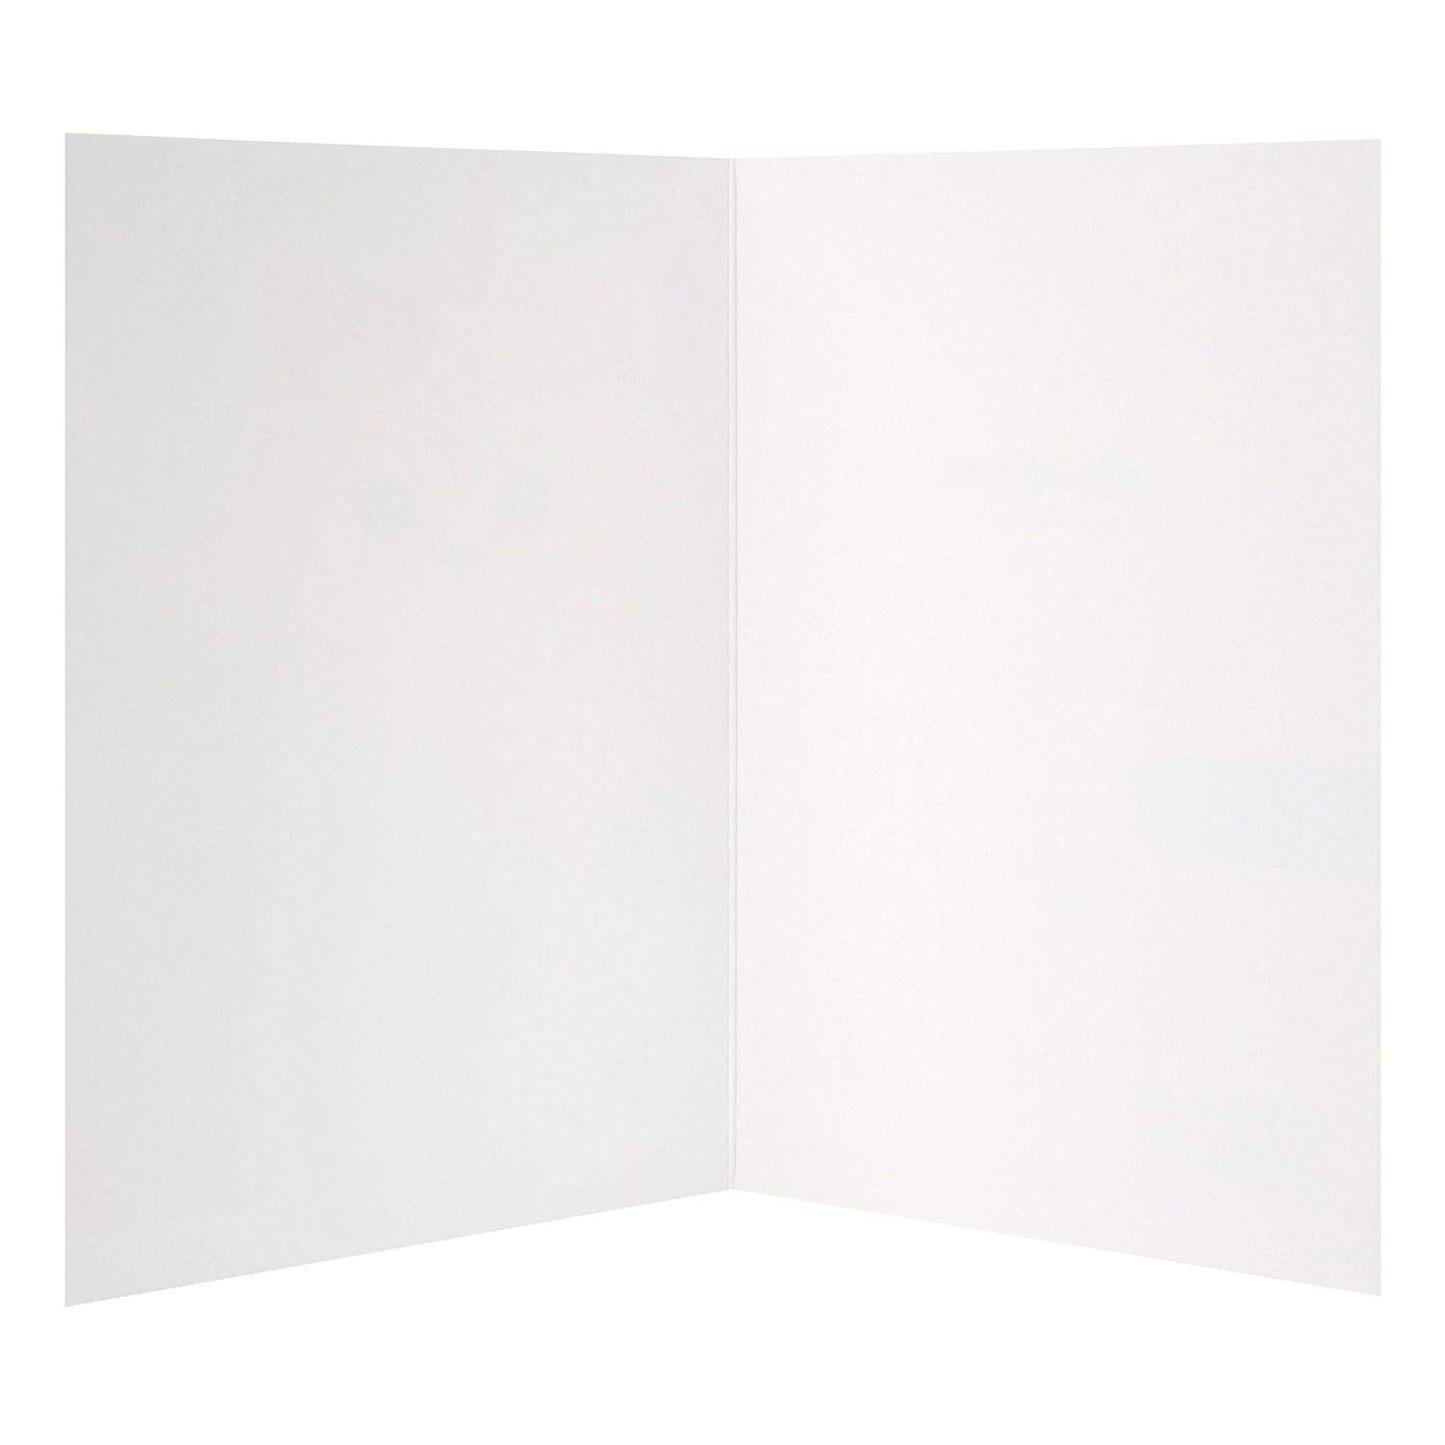 Blank Card 'Unicorn Cat'